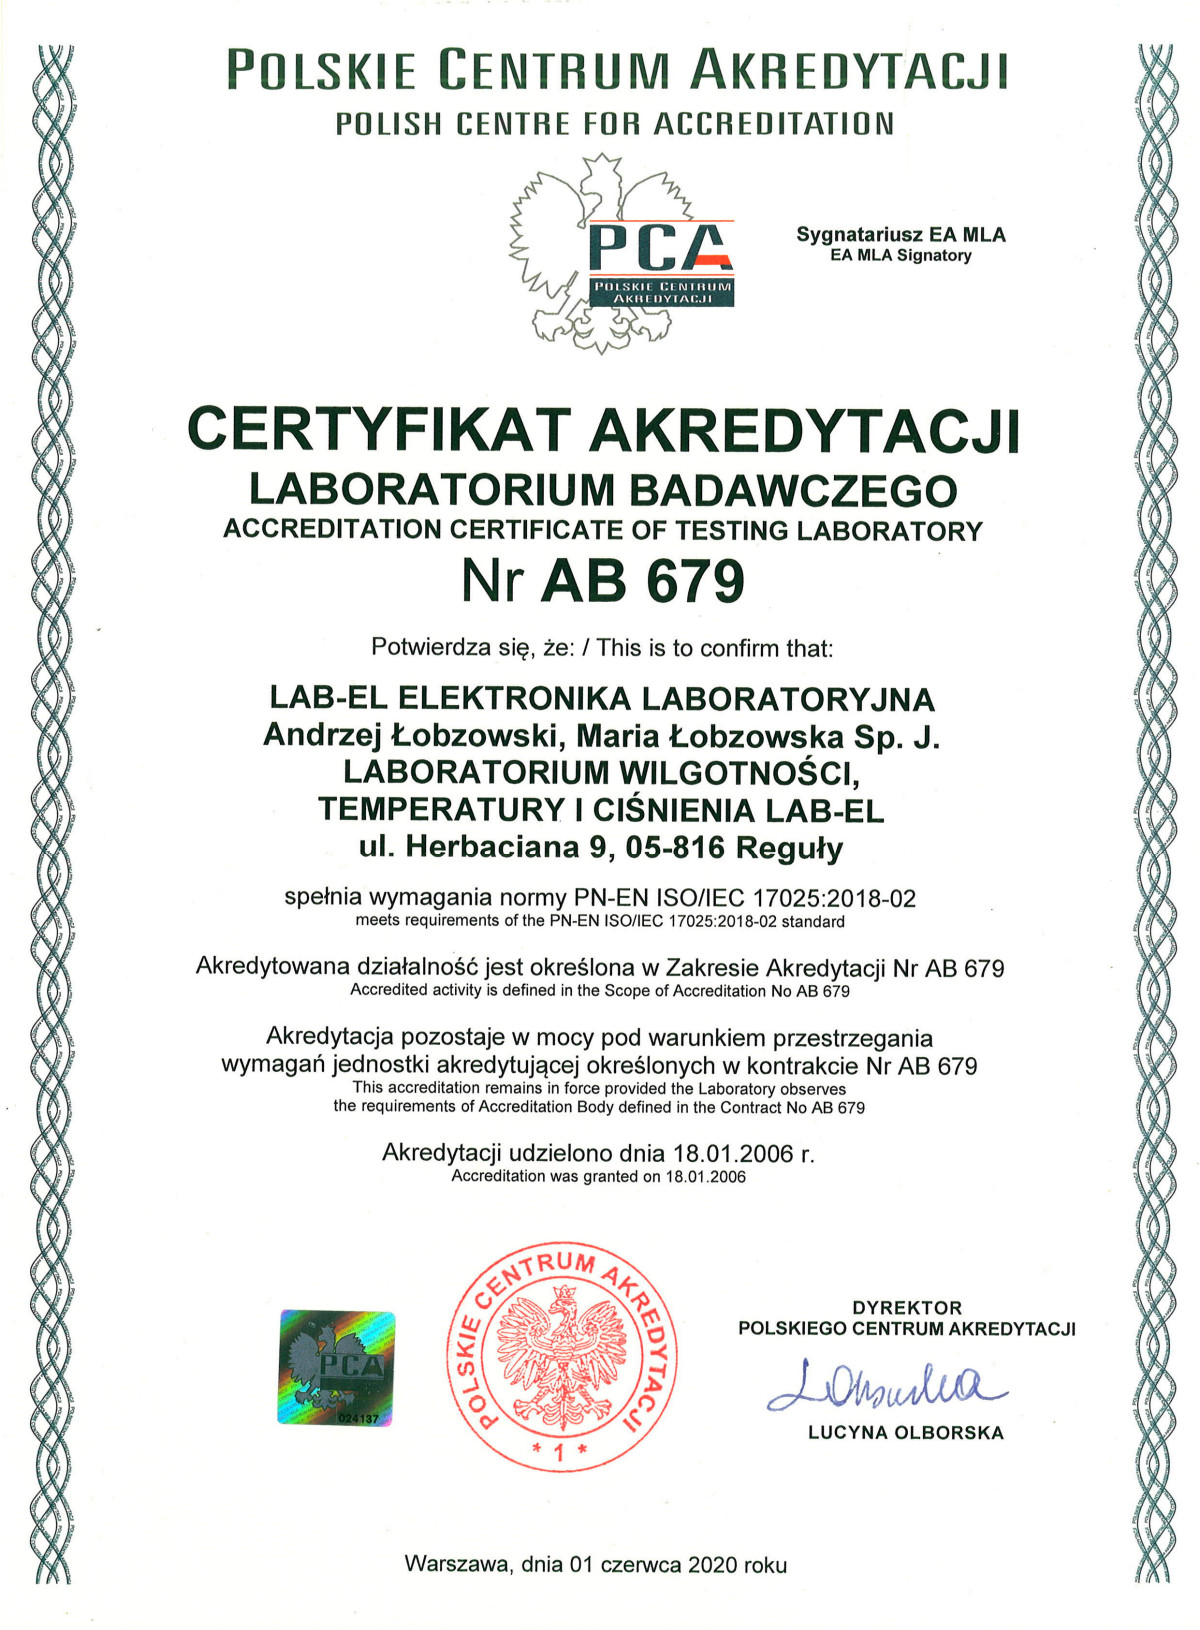 http://www.label.pl/img/certyfikat-akredytacji-ab679.jpg